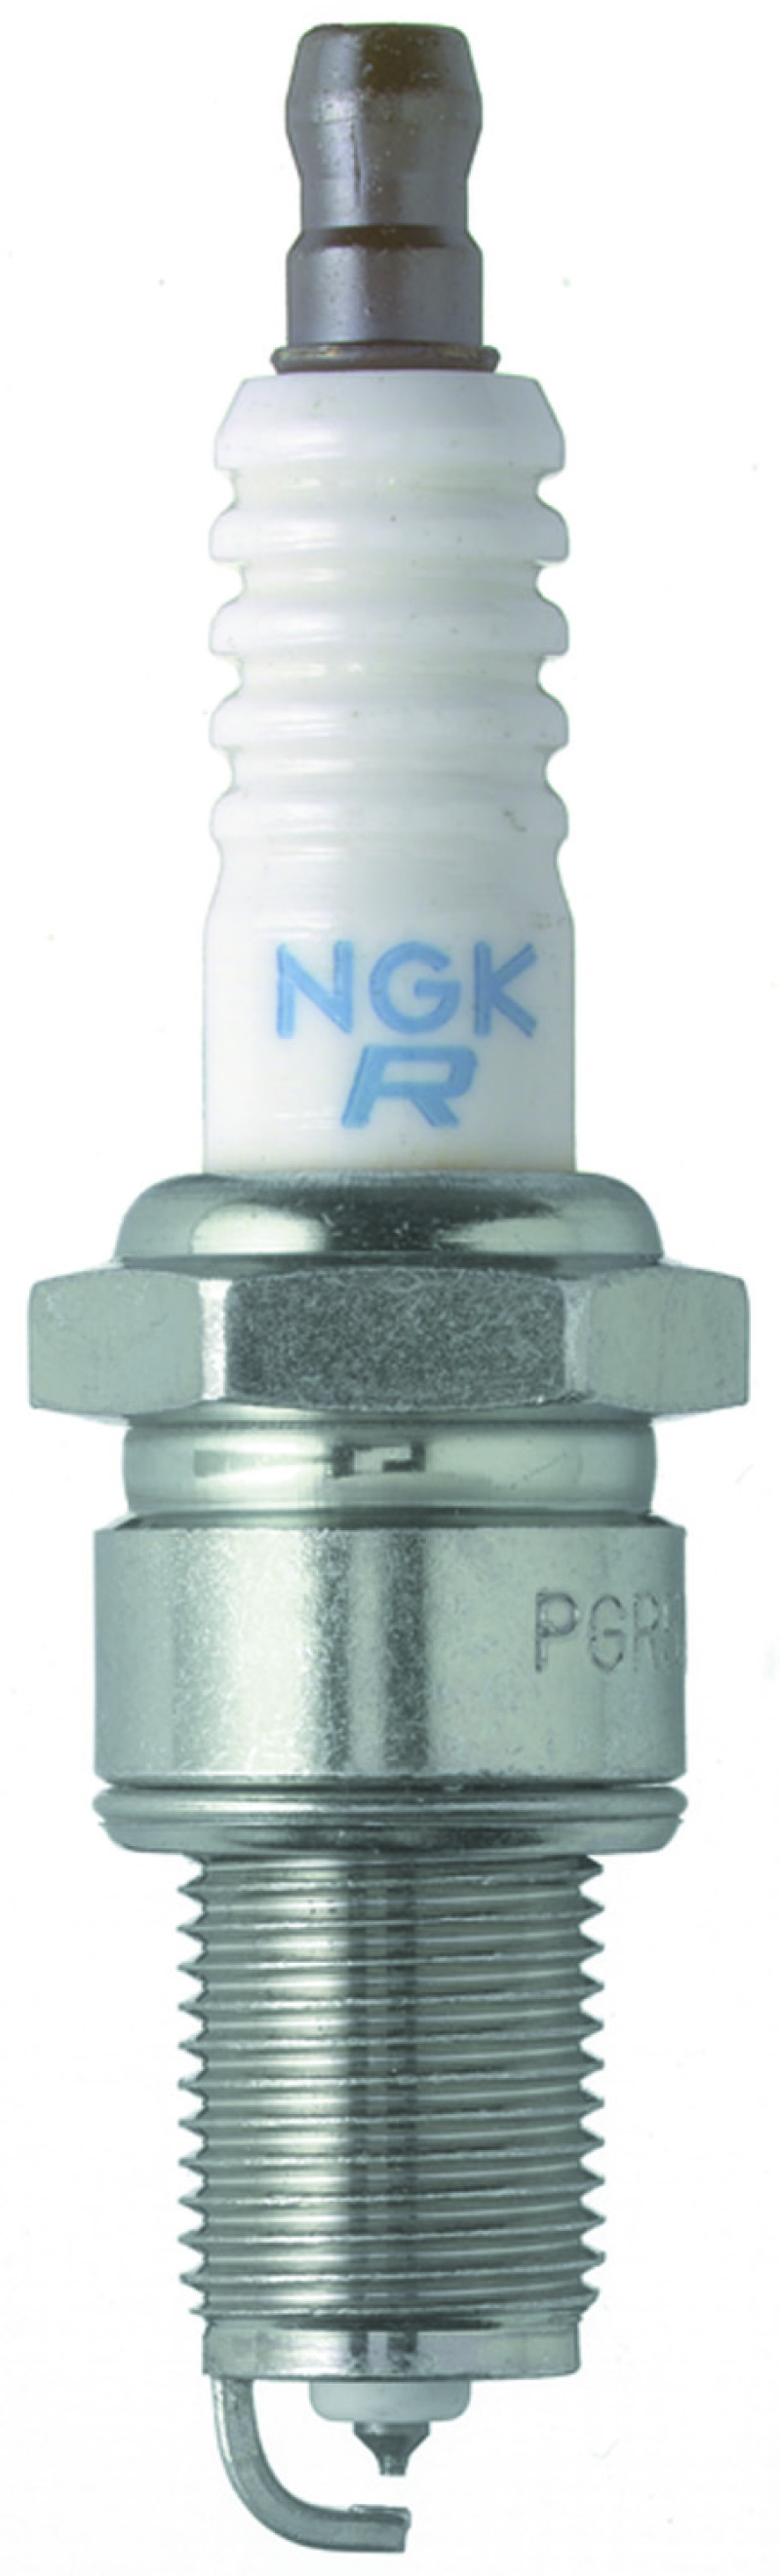 NGK Laser Platinum Spark Plug Box of 4 (PGR7A) - 3200